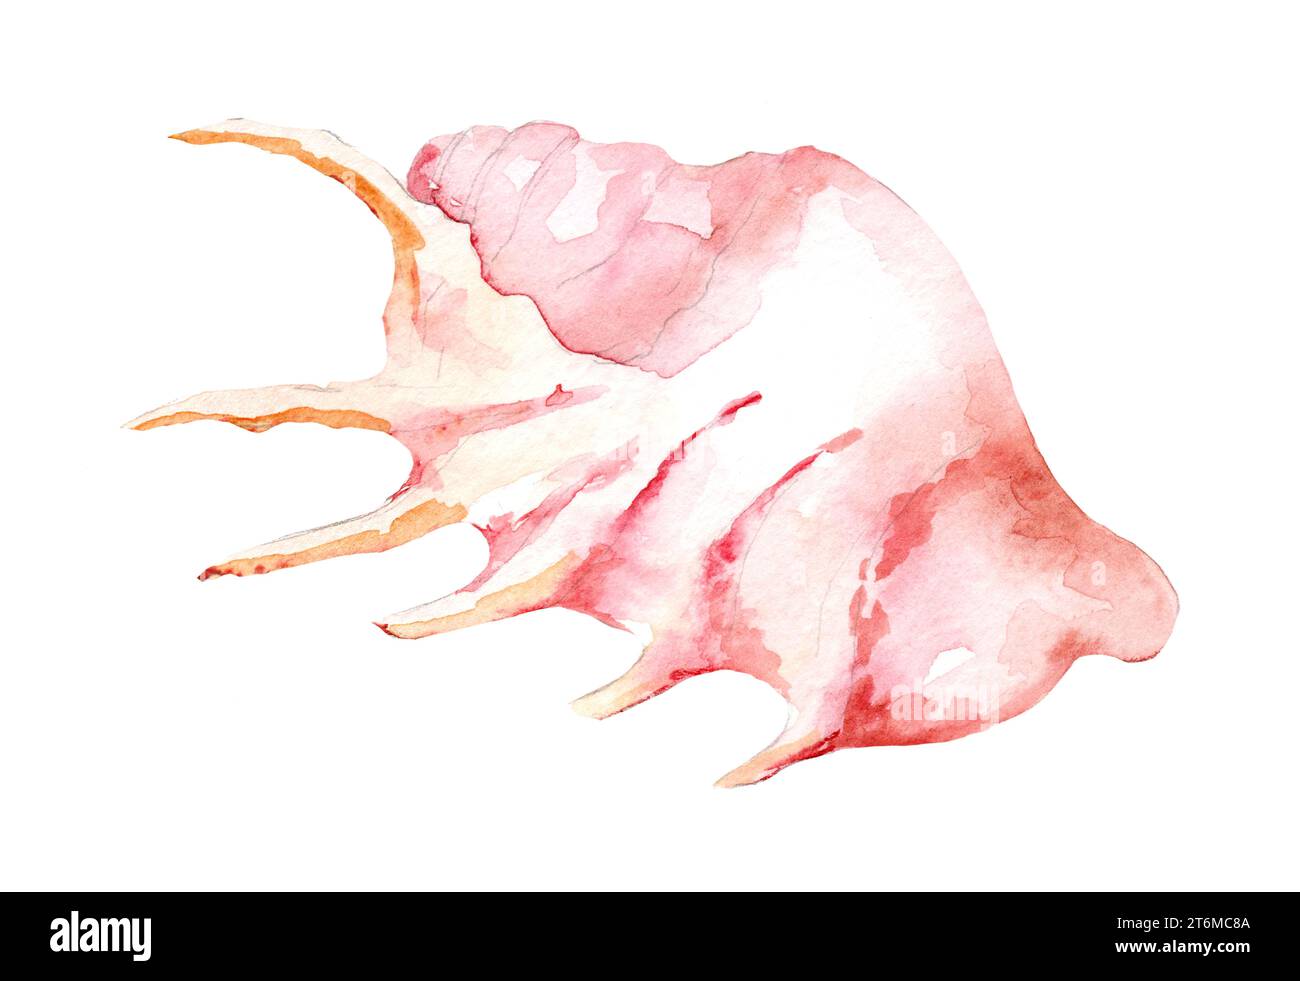 Acquerello Seashell. Illustrazione a mano di molluschi su sfondo bianco isolato. Disegno colorato di conchiglie marine. Fauna marina esotica. Underwa selvaggio Foto Stock